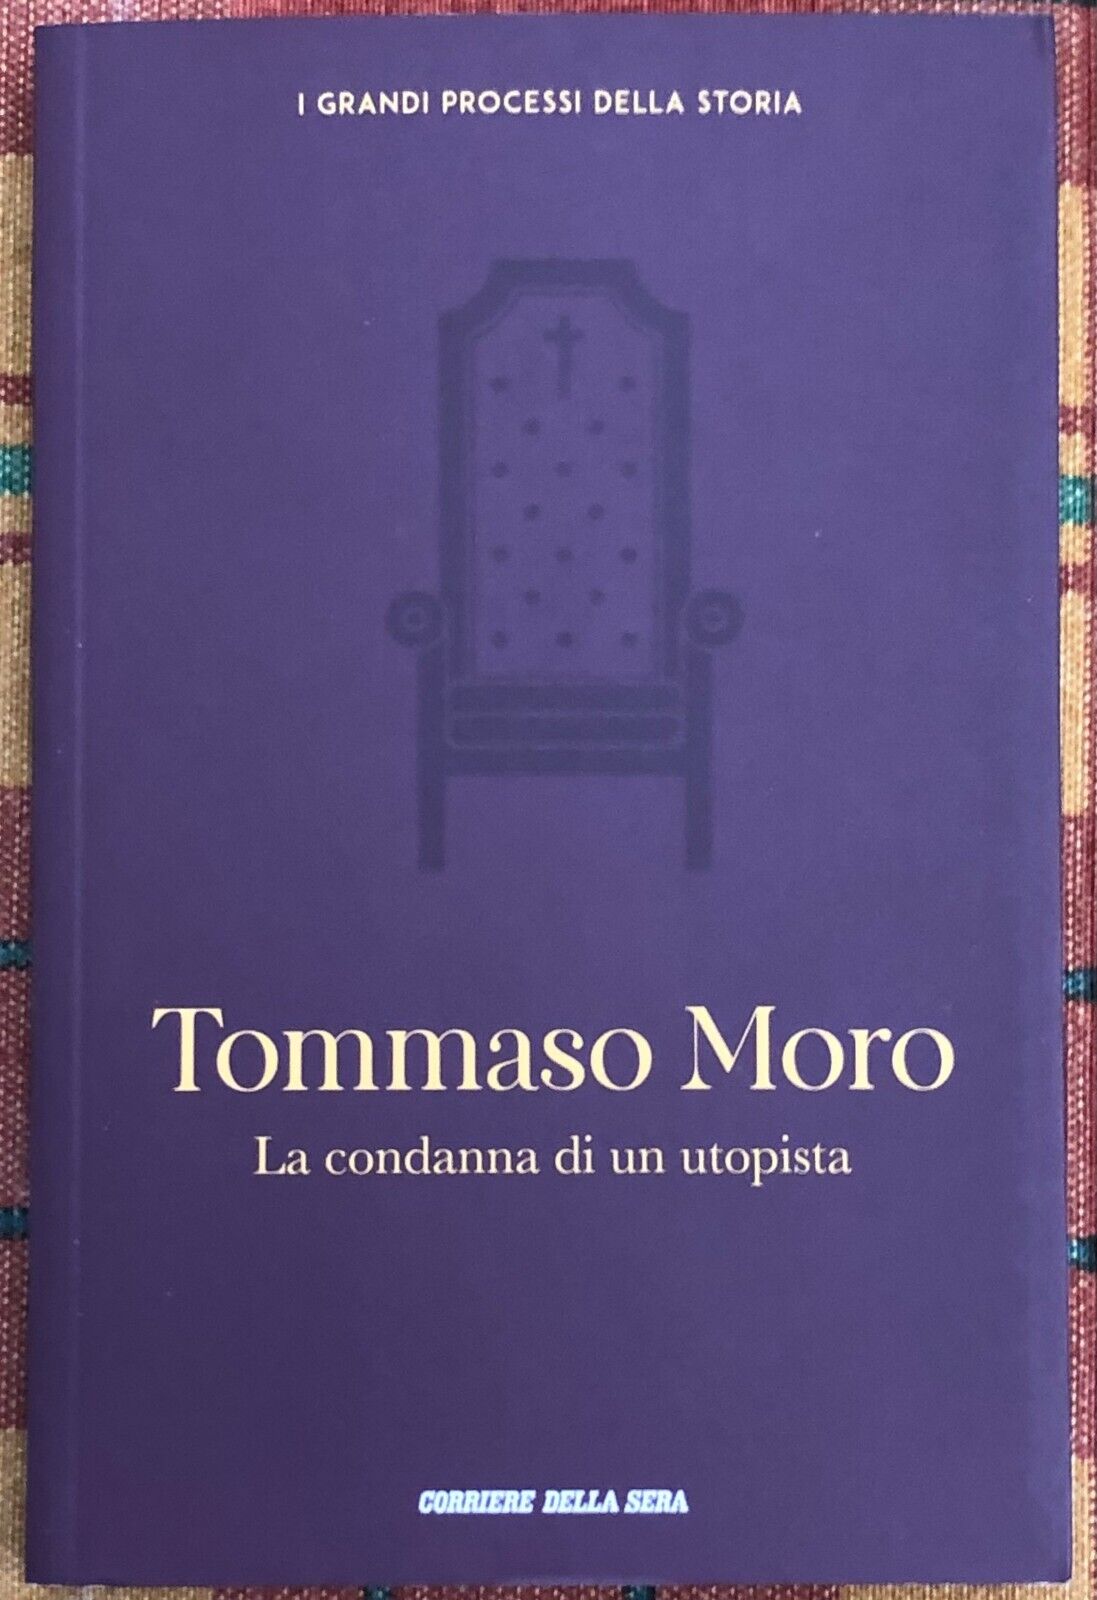 I grandi processi della storia n. 24 - Tommaso Moro. La condanna di un utopista 